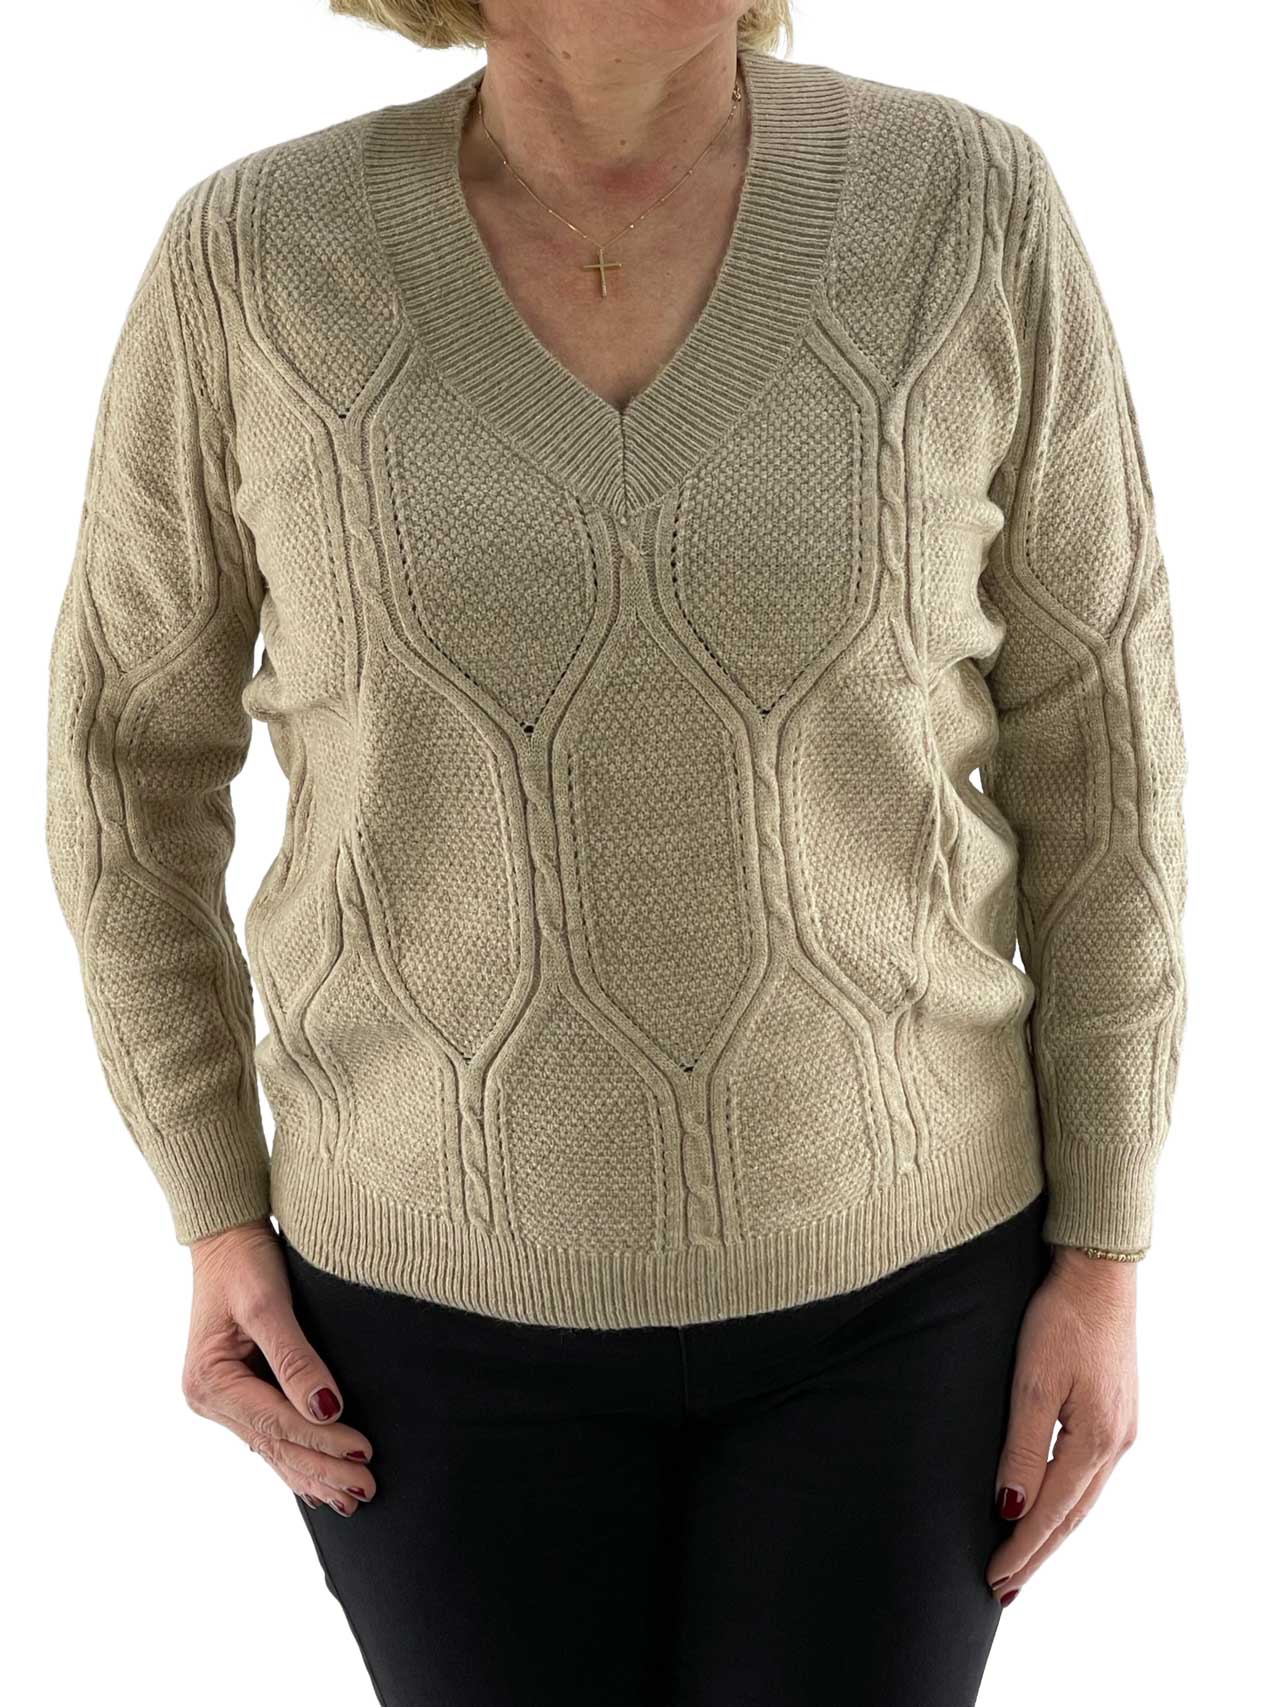 Women's knitted blouse V code 73126